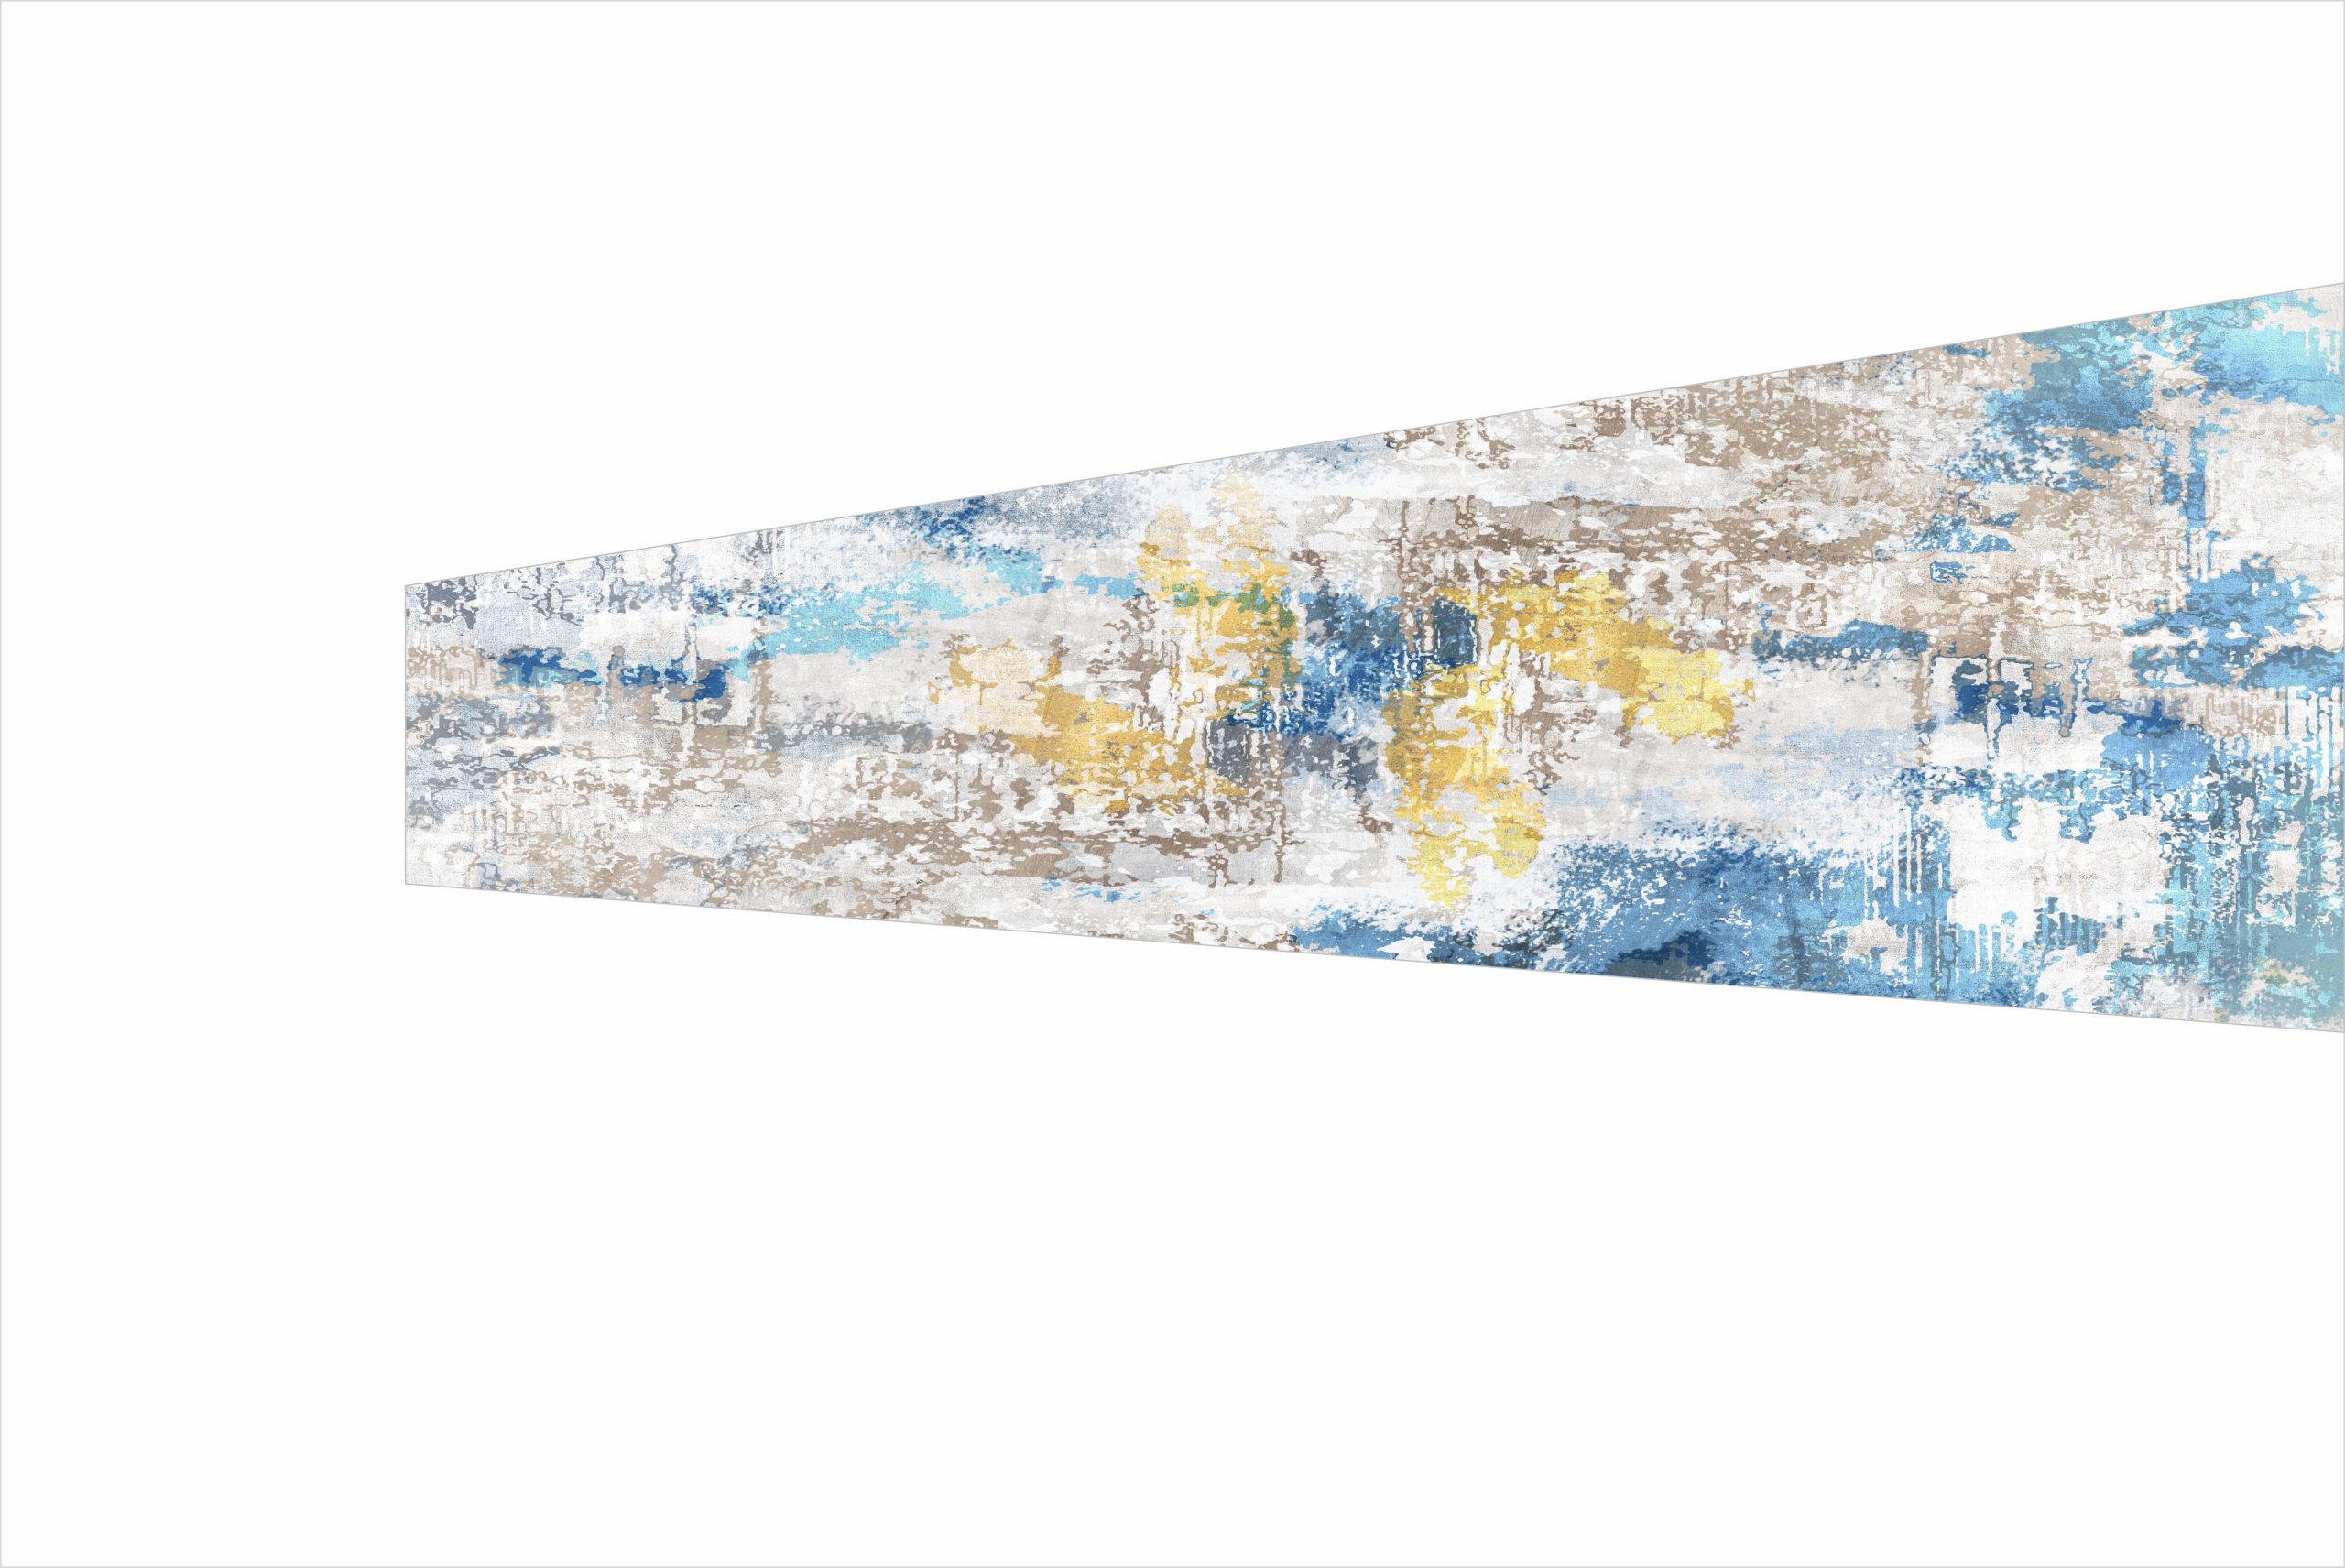 10 - Abstract Art Series Matte finish For Glass Splashbacks